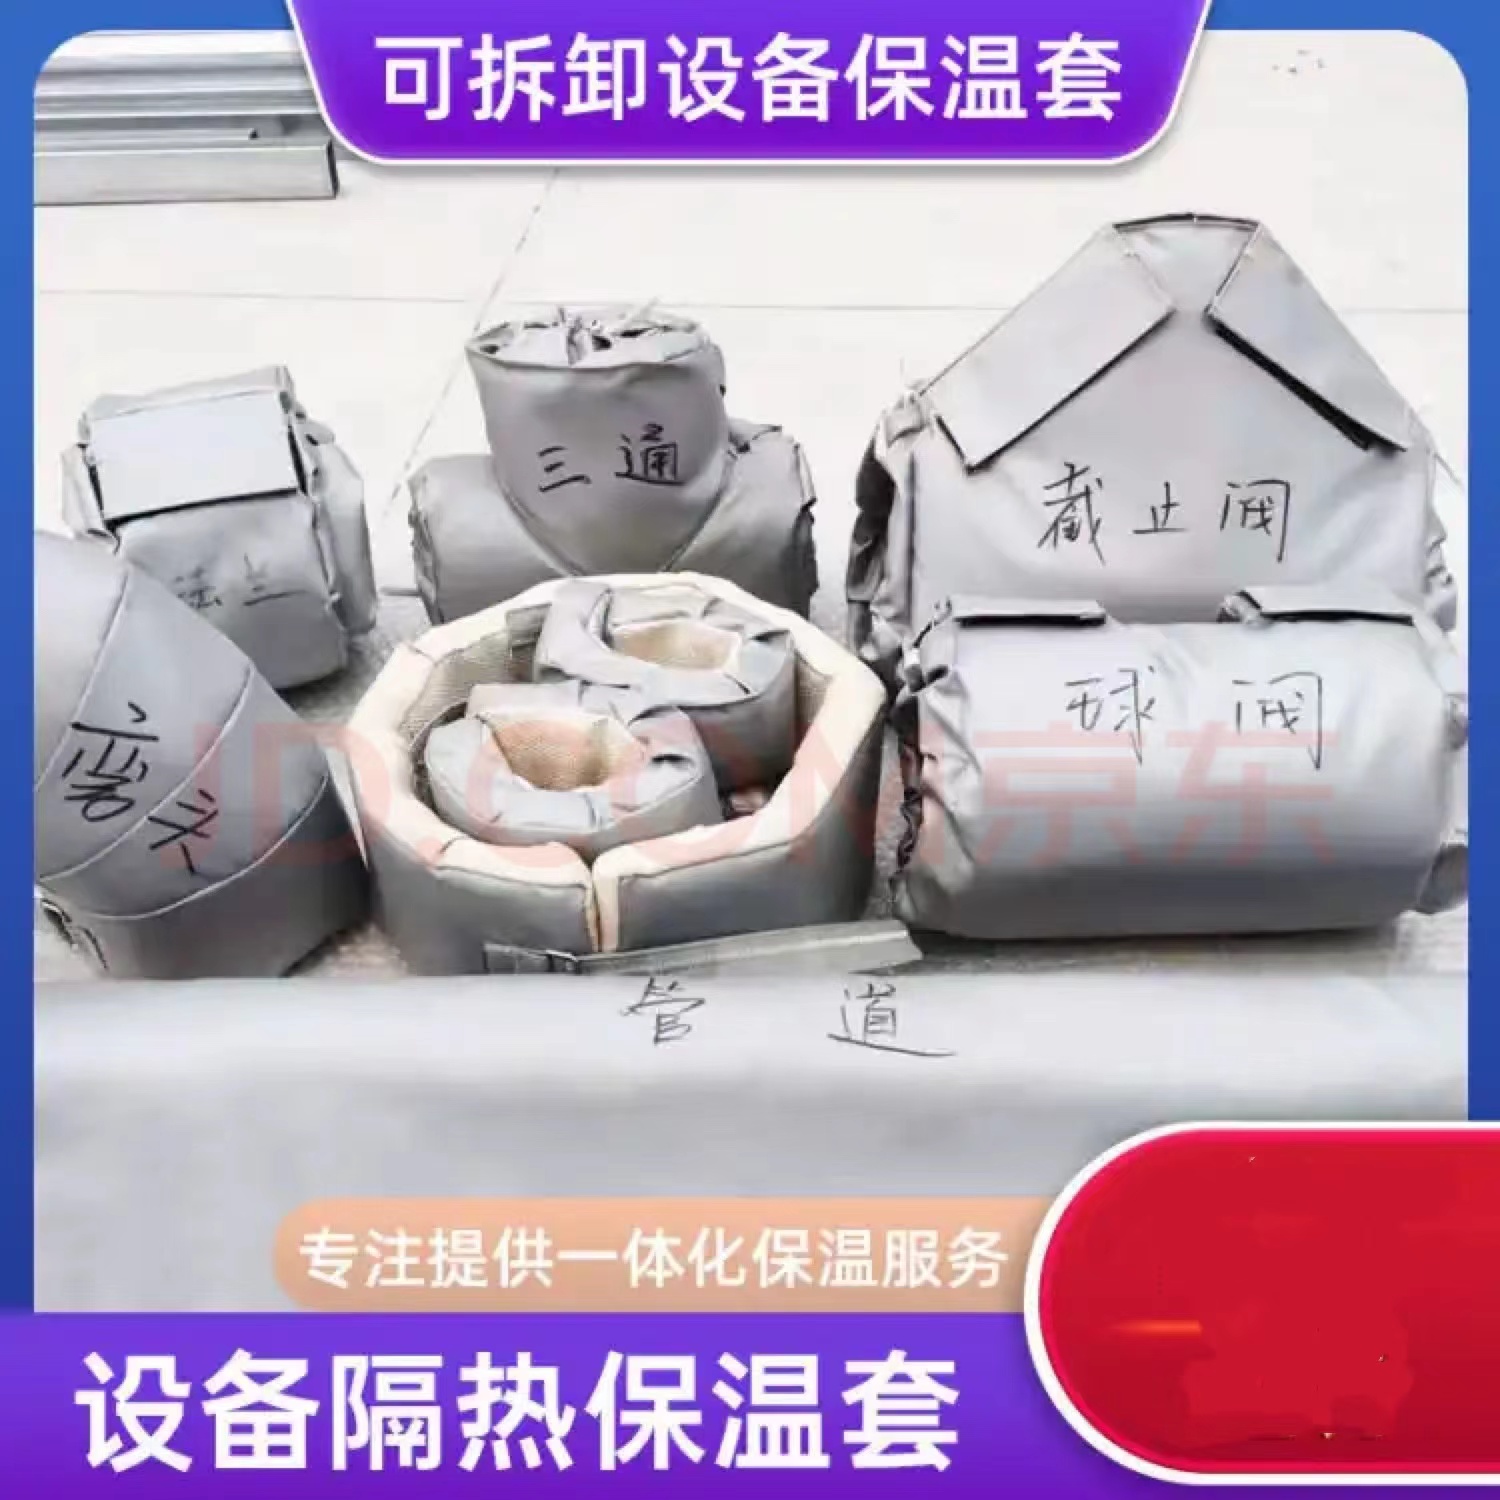 威耐斯_重庆排气管可拆卸式隔热套_电话咨询